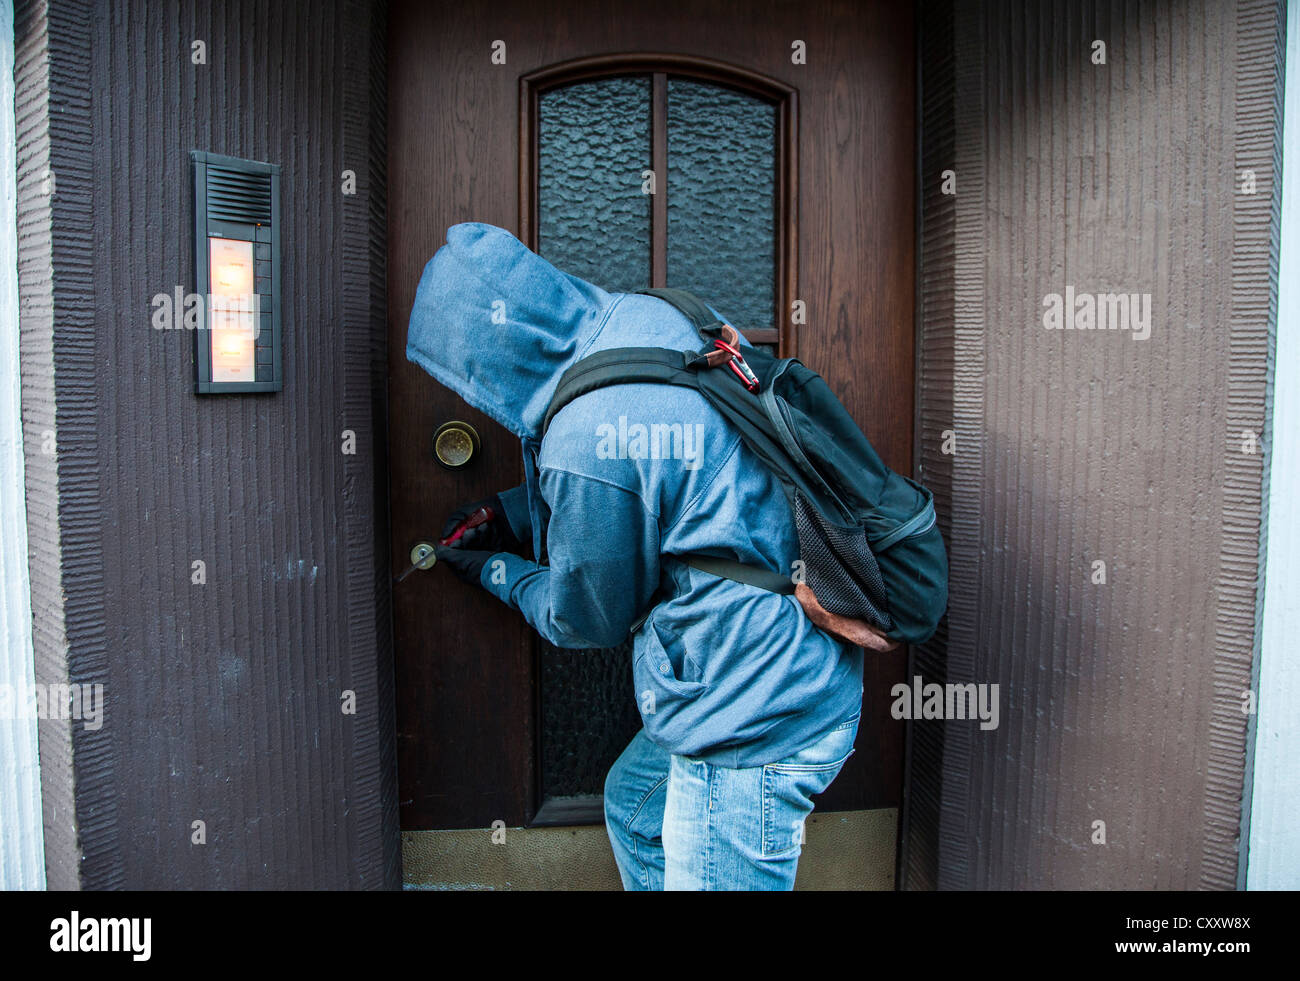 Ladro si rompe in un appartamento. Immagine di simbolo. Foto Stock